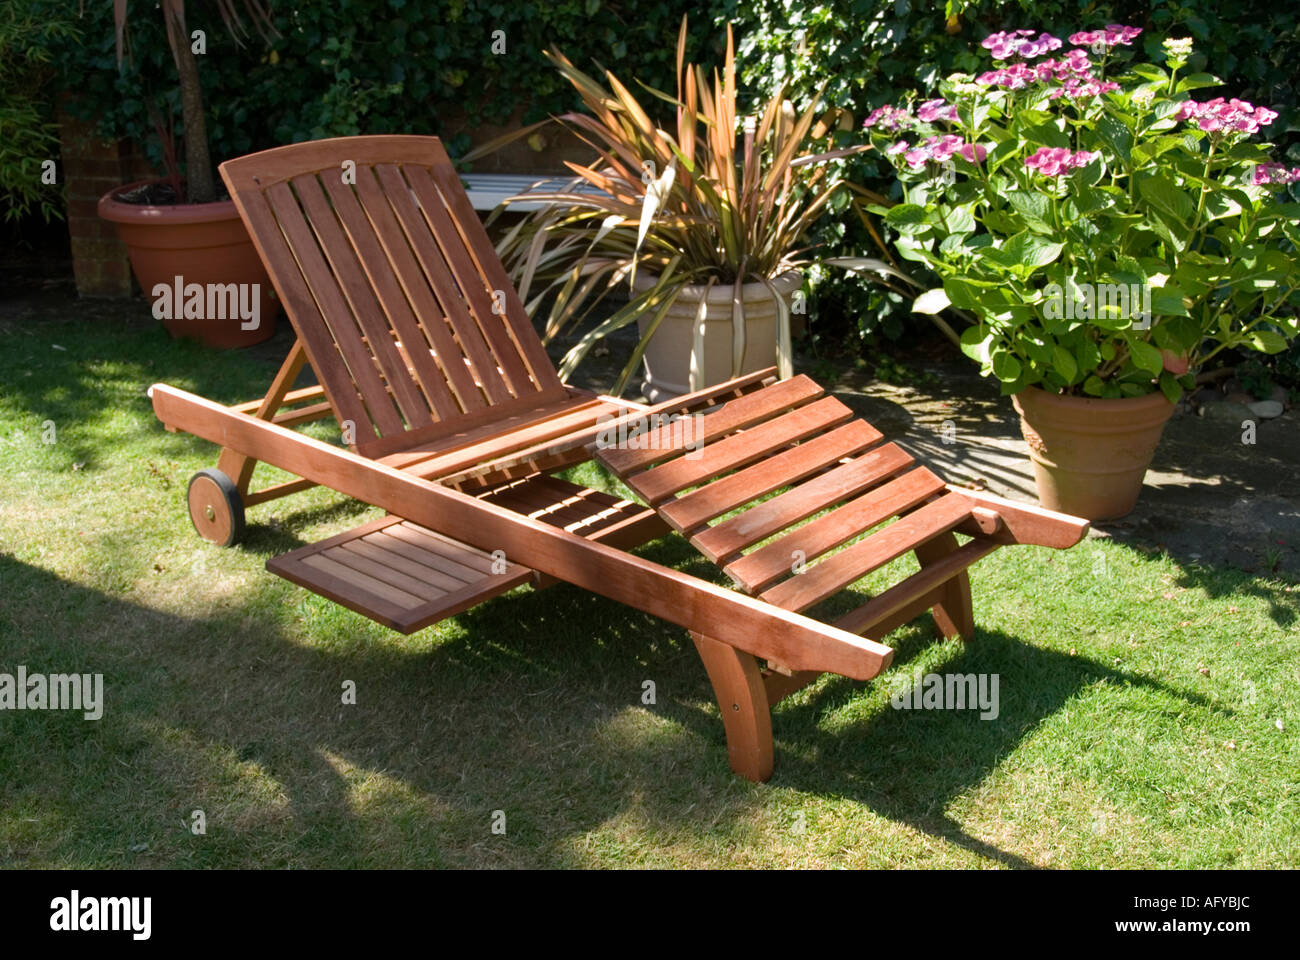 garden lounger chair